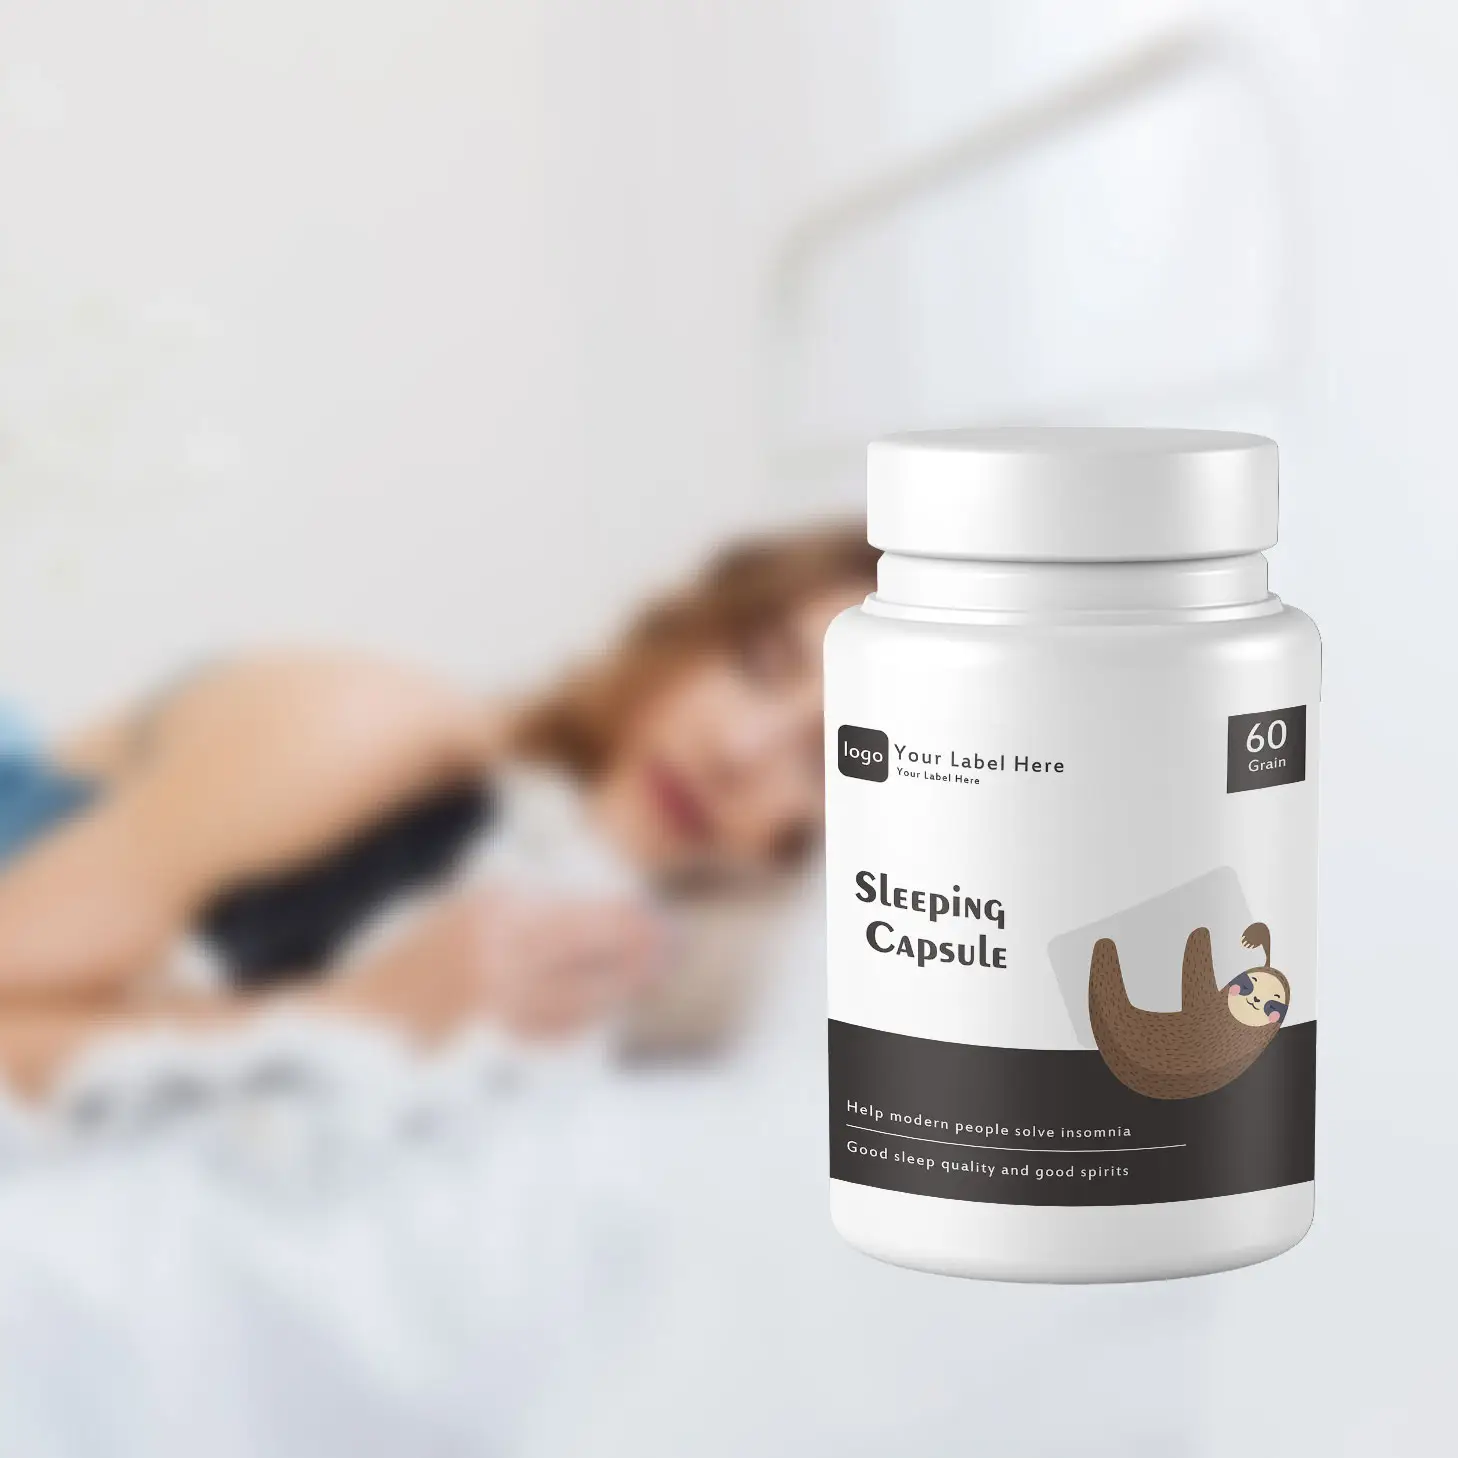 Uyku yardımı kalite güvenli uyku kapsülü destek kapsülleri sağlık kapsülleri toplu satış